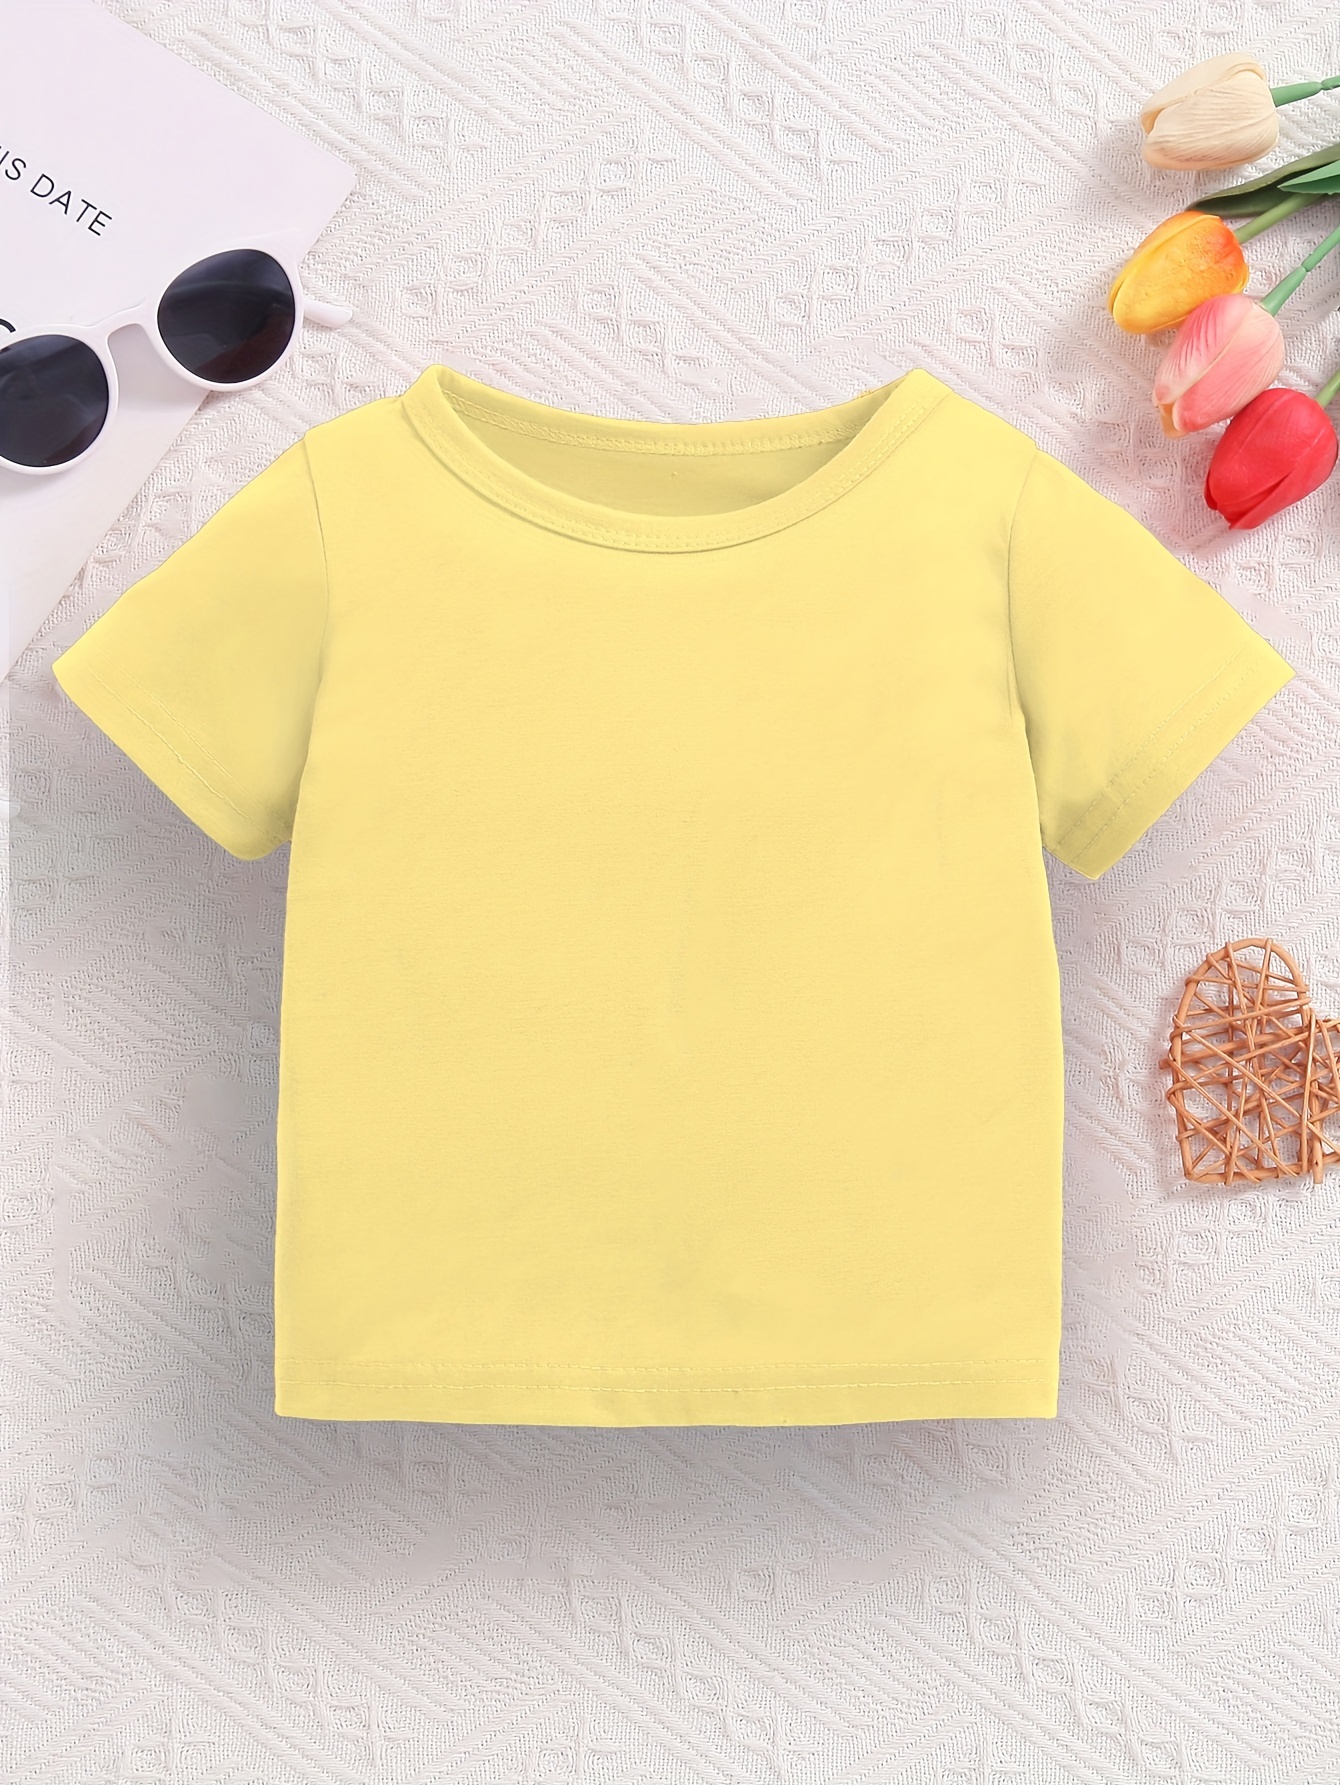 Camiseta básica de manga corta para niños y niñas pequeñas, camisetas  casuales de verano, camiseta de color sólido para niñas (amarillo, 2 años)